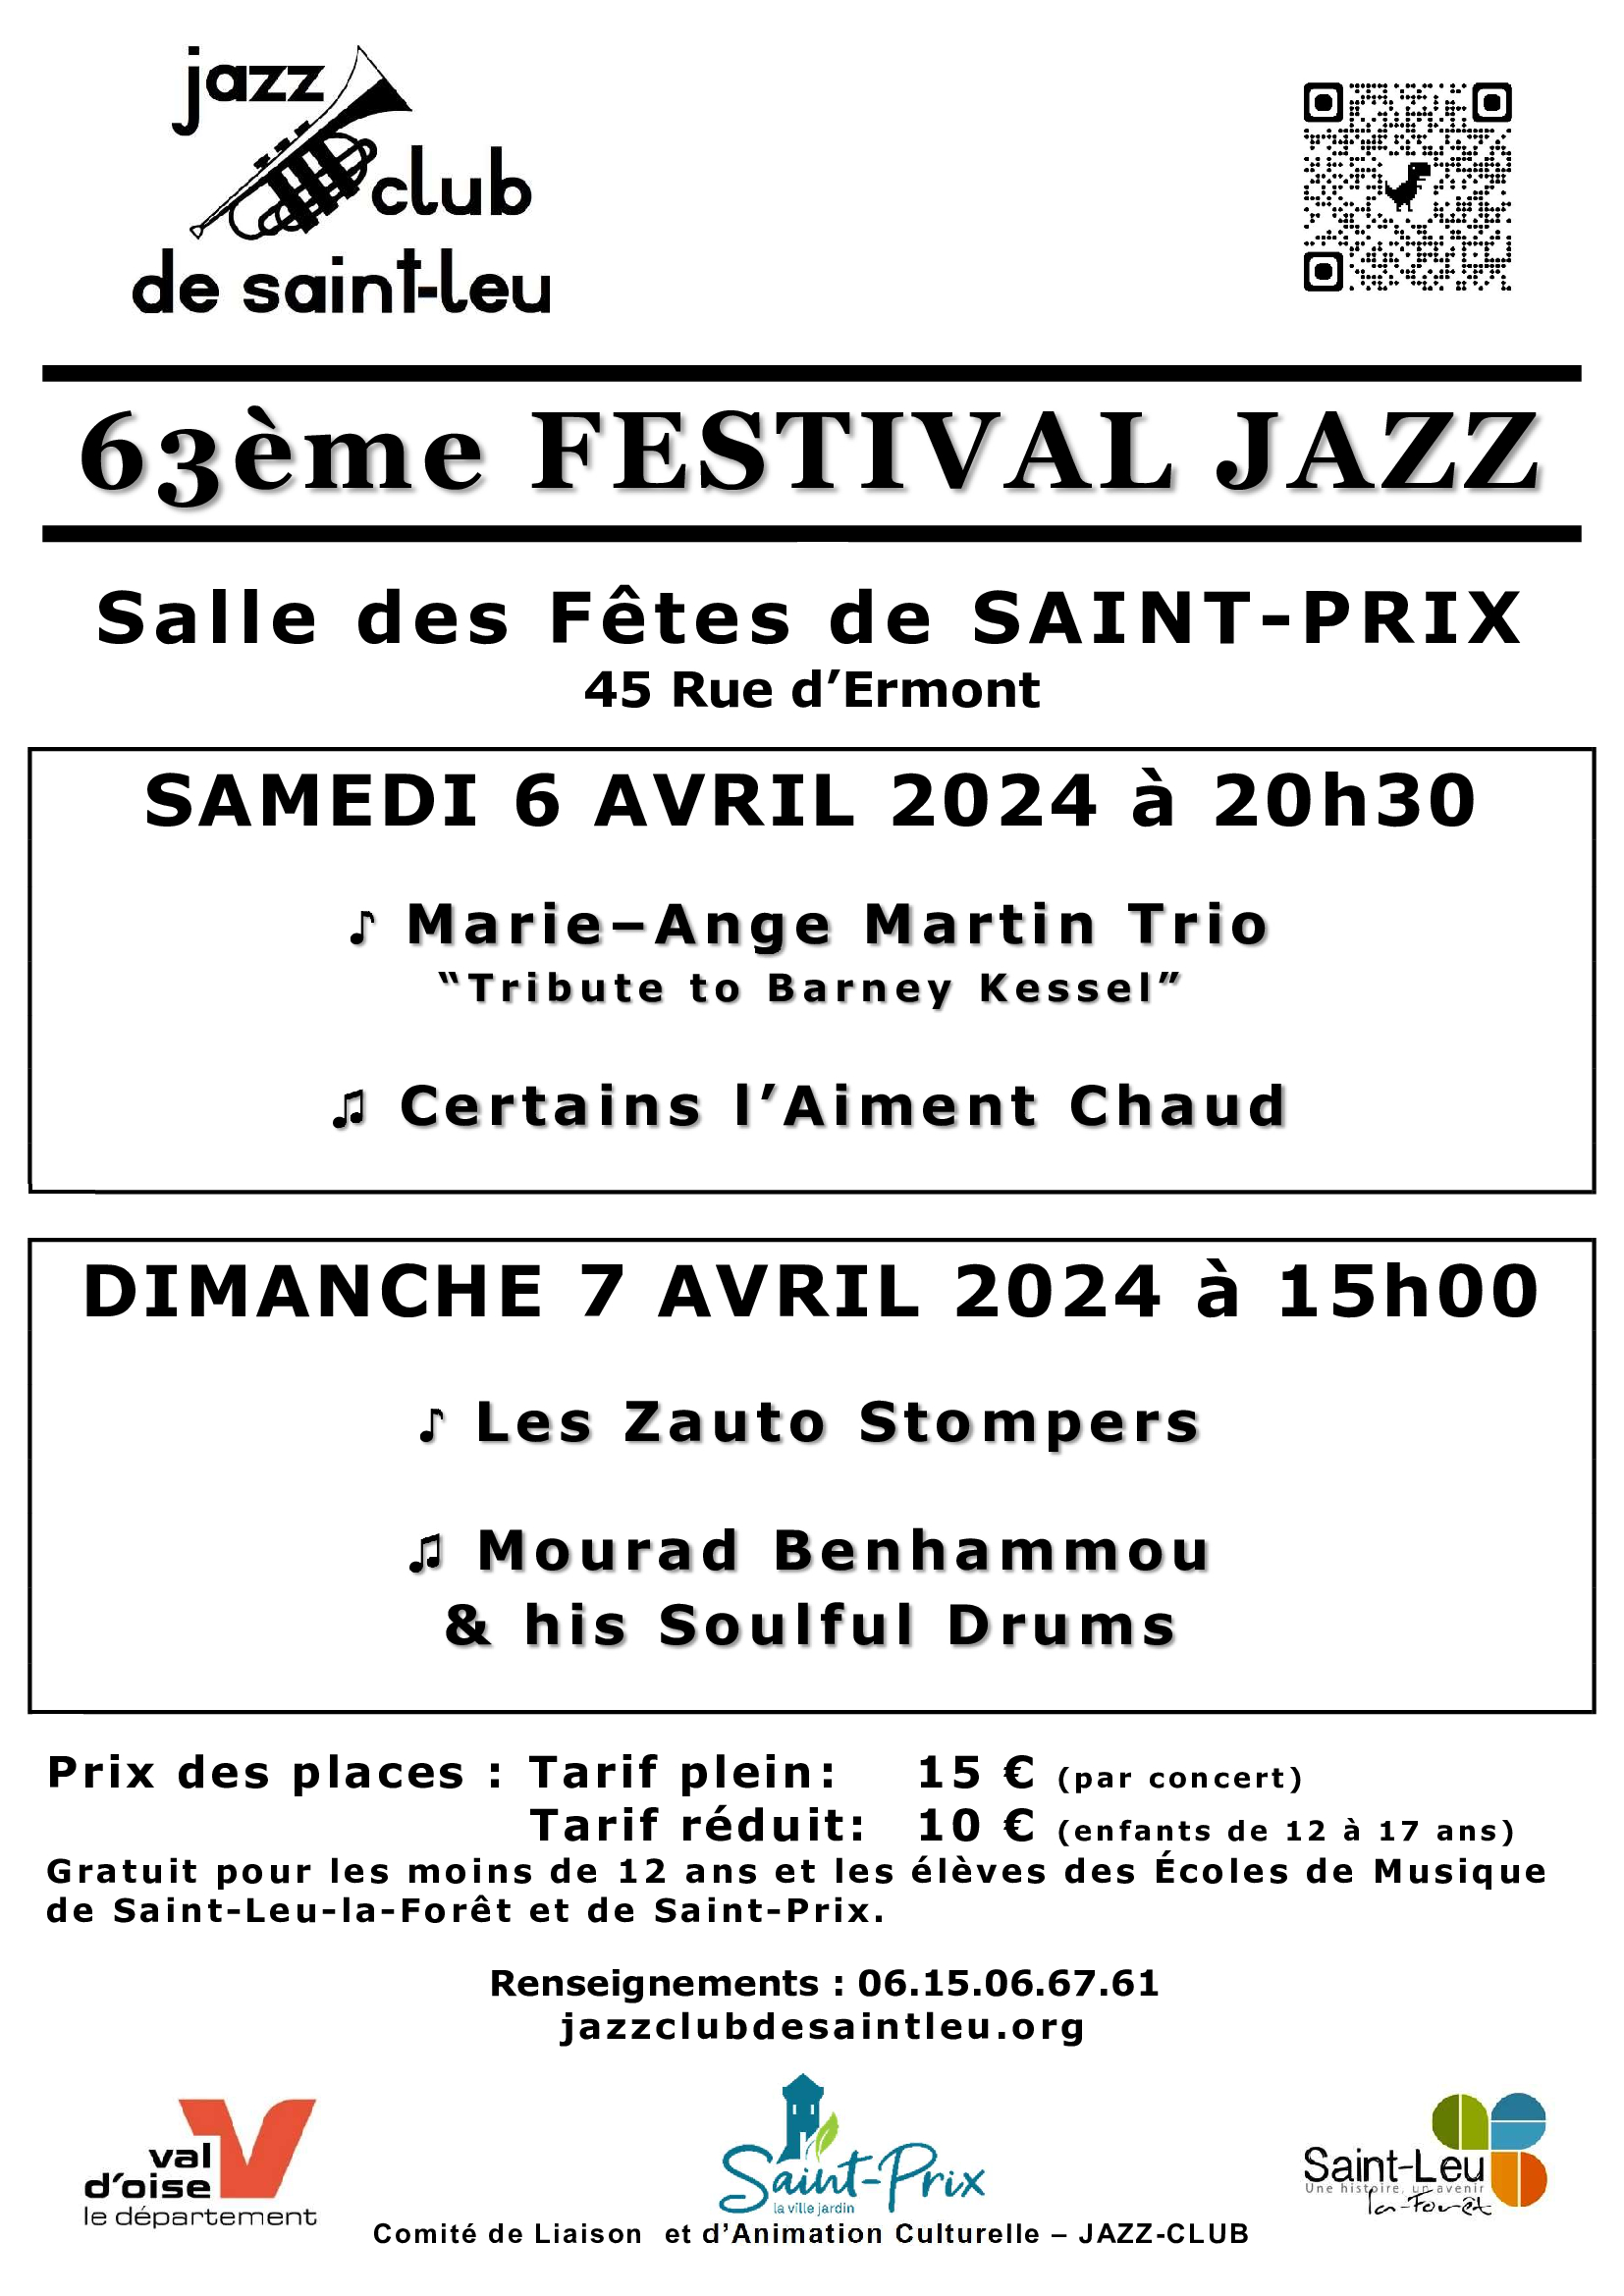 Jazz Club de Saint-Leu